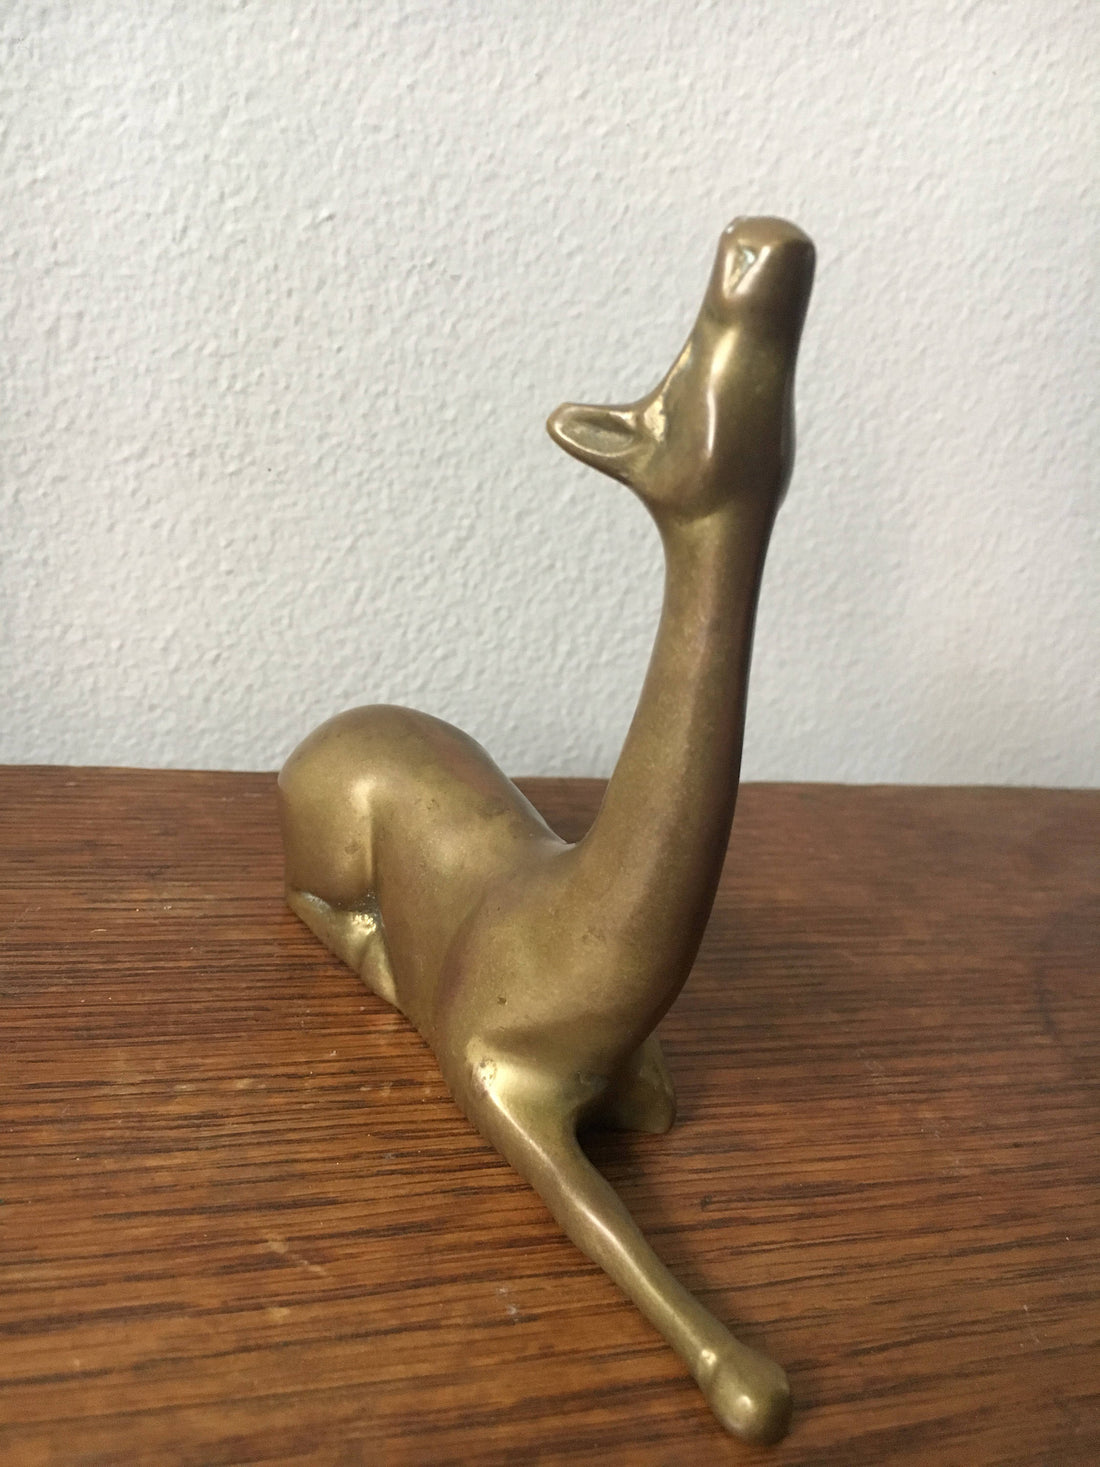 Vintage Solid Brass Deer Statue